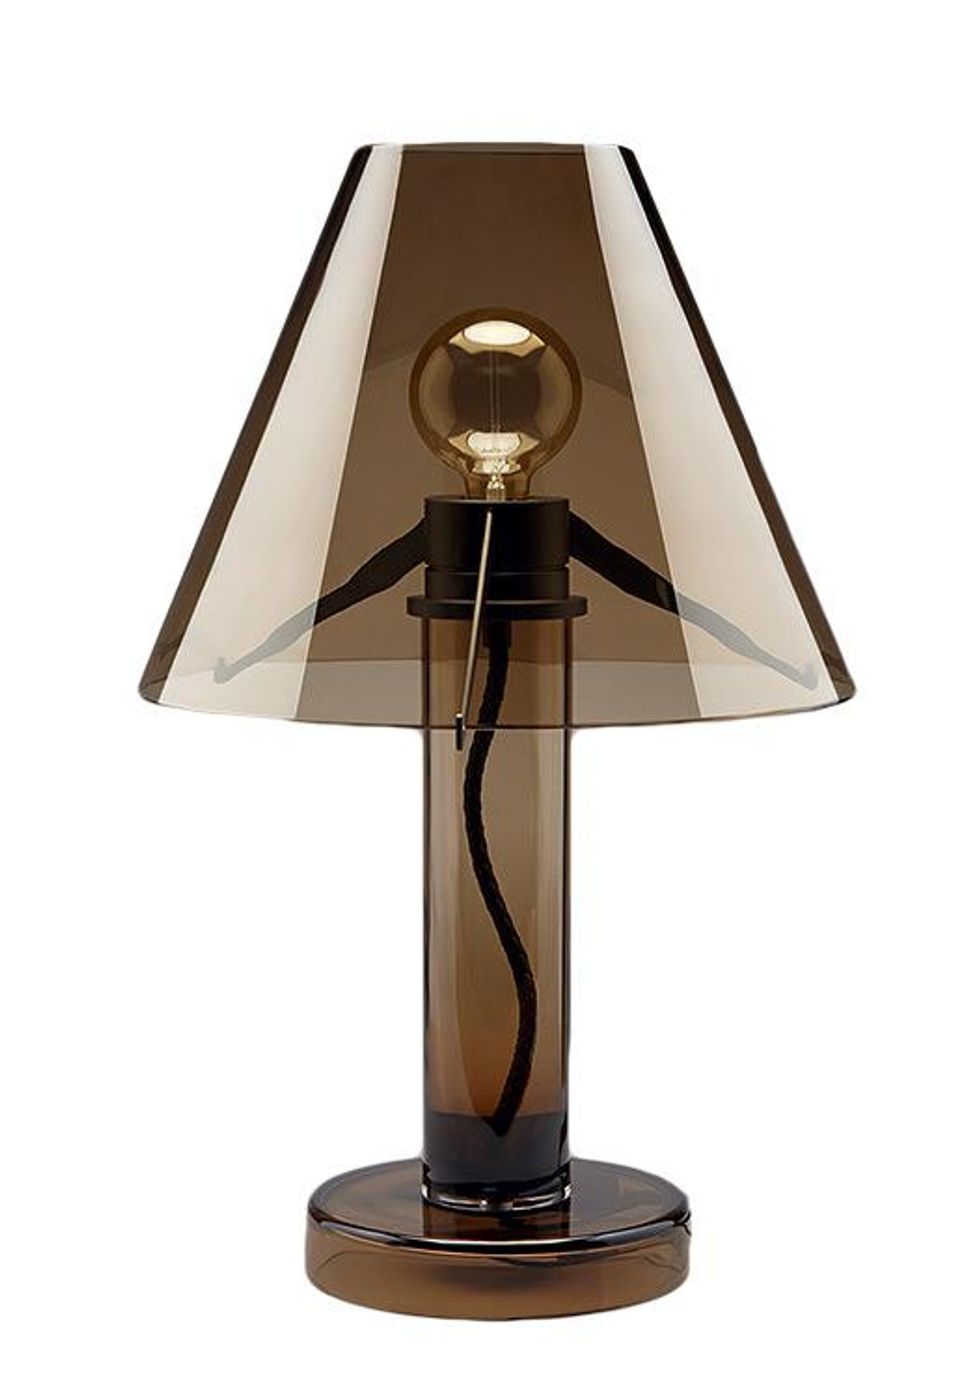 Lamp by Bottega Veneta, $6,000.